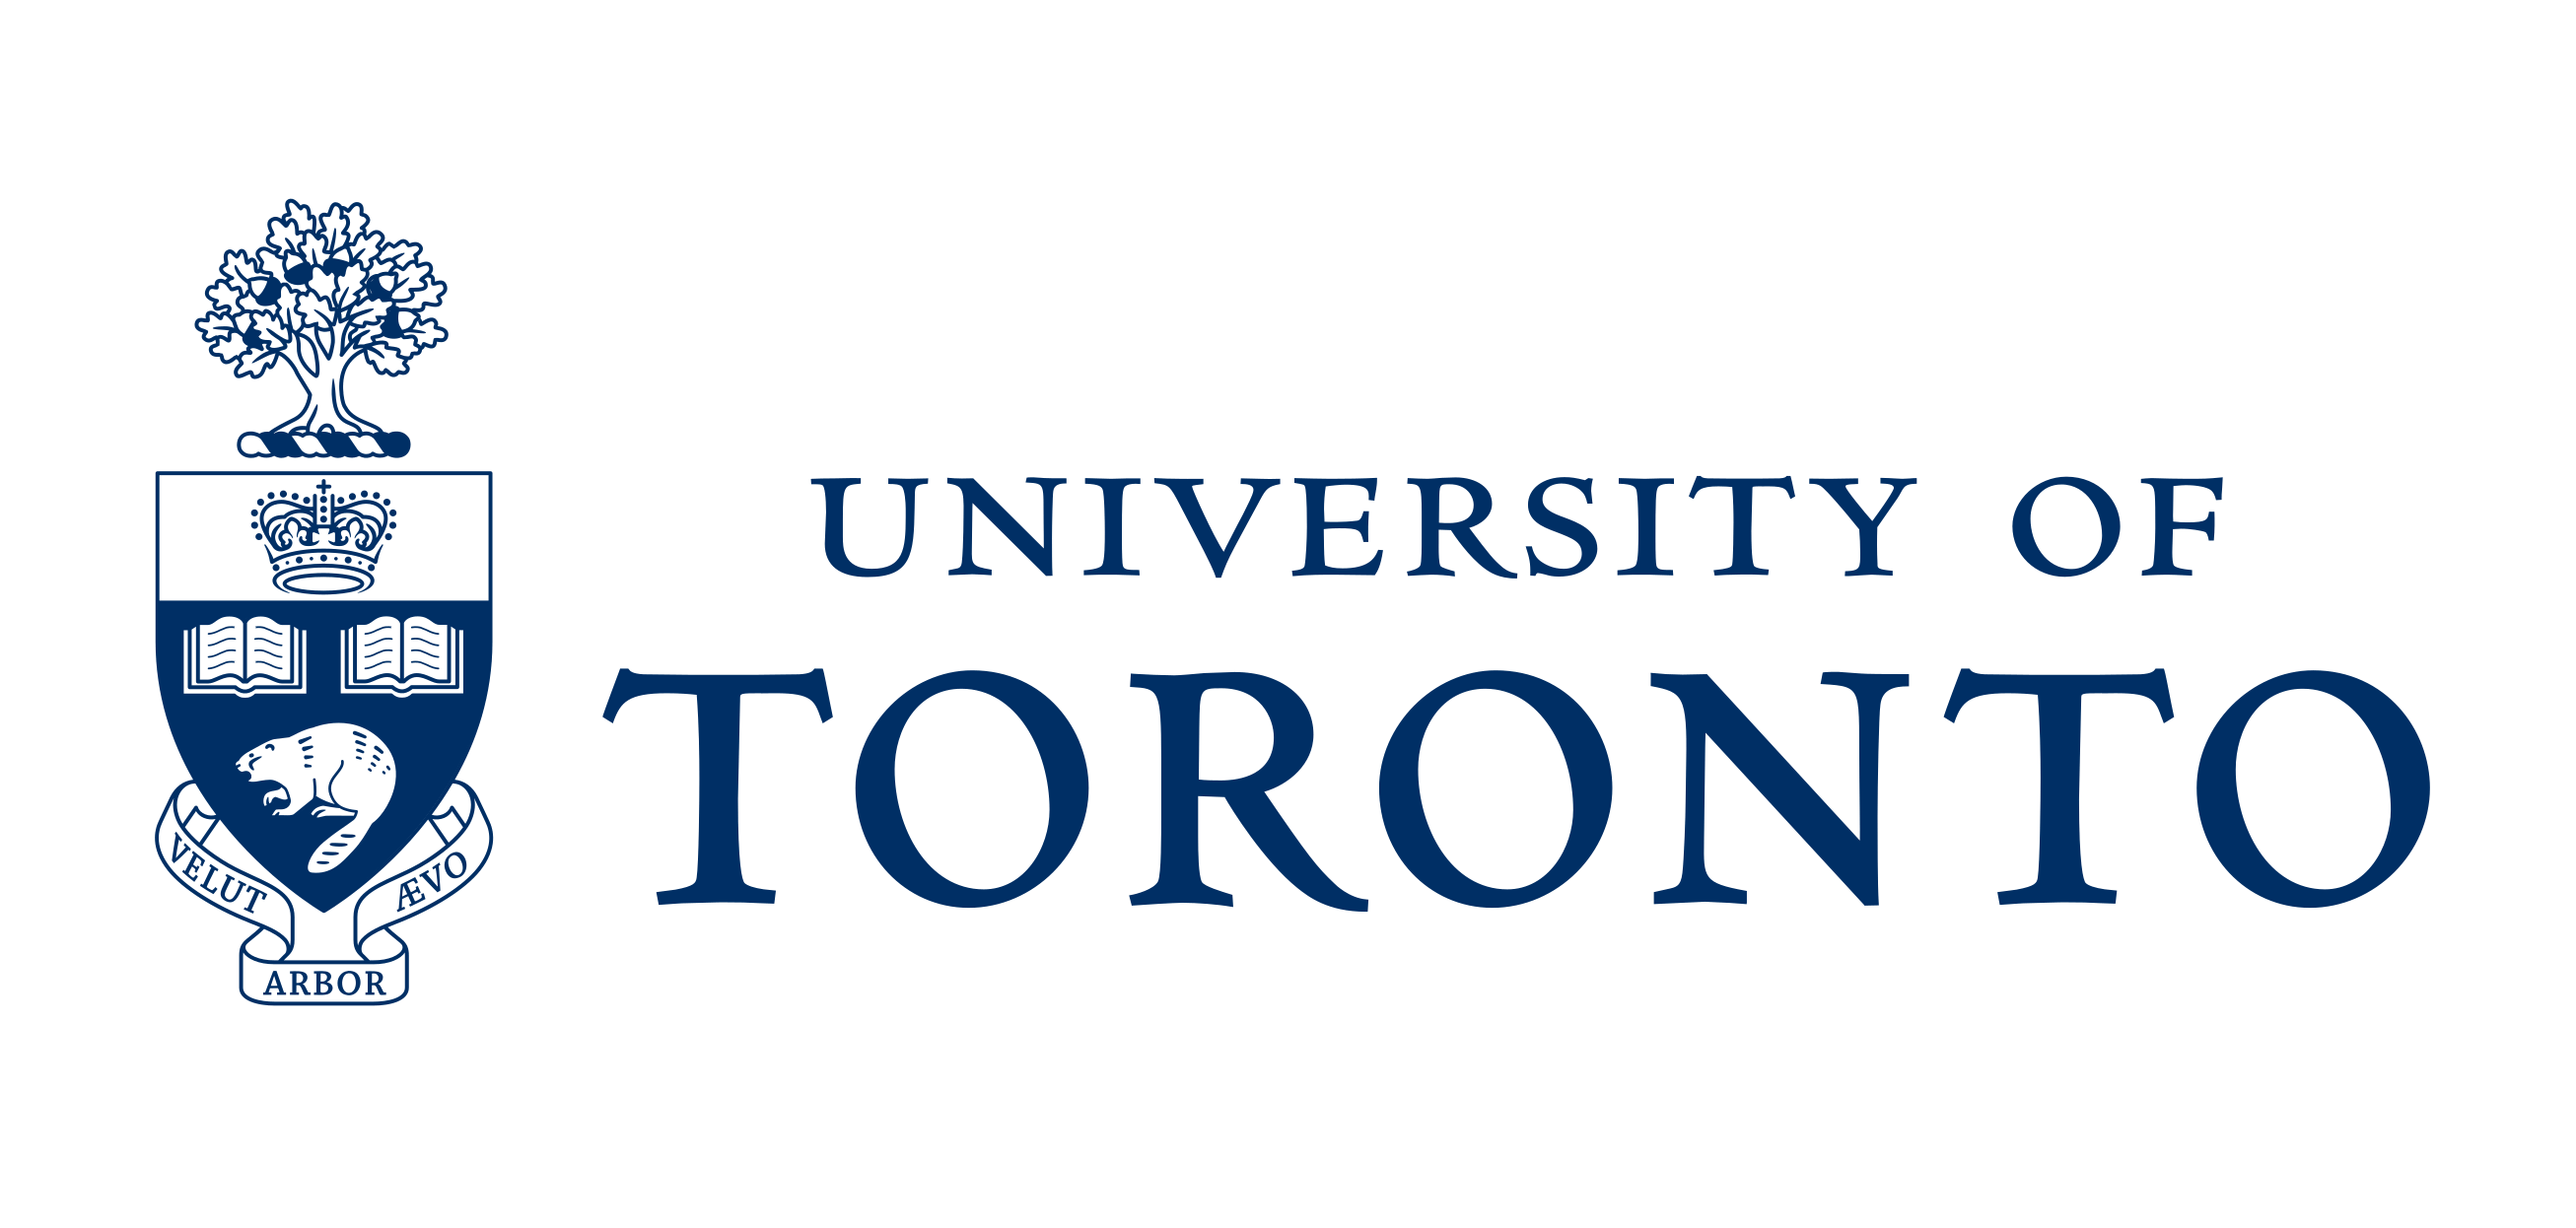 U of T logo